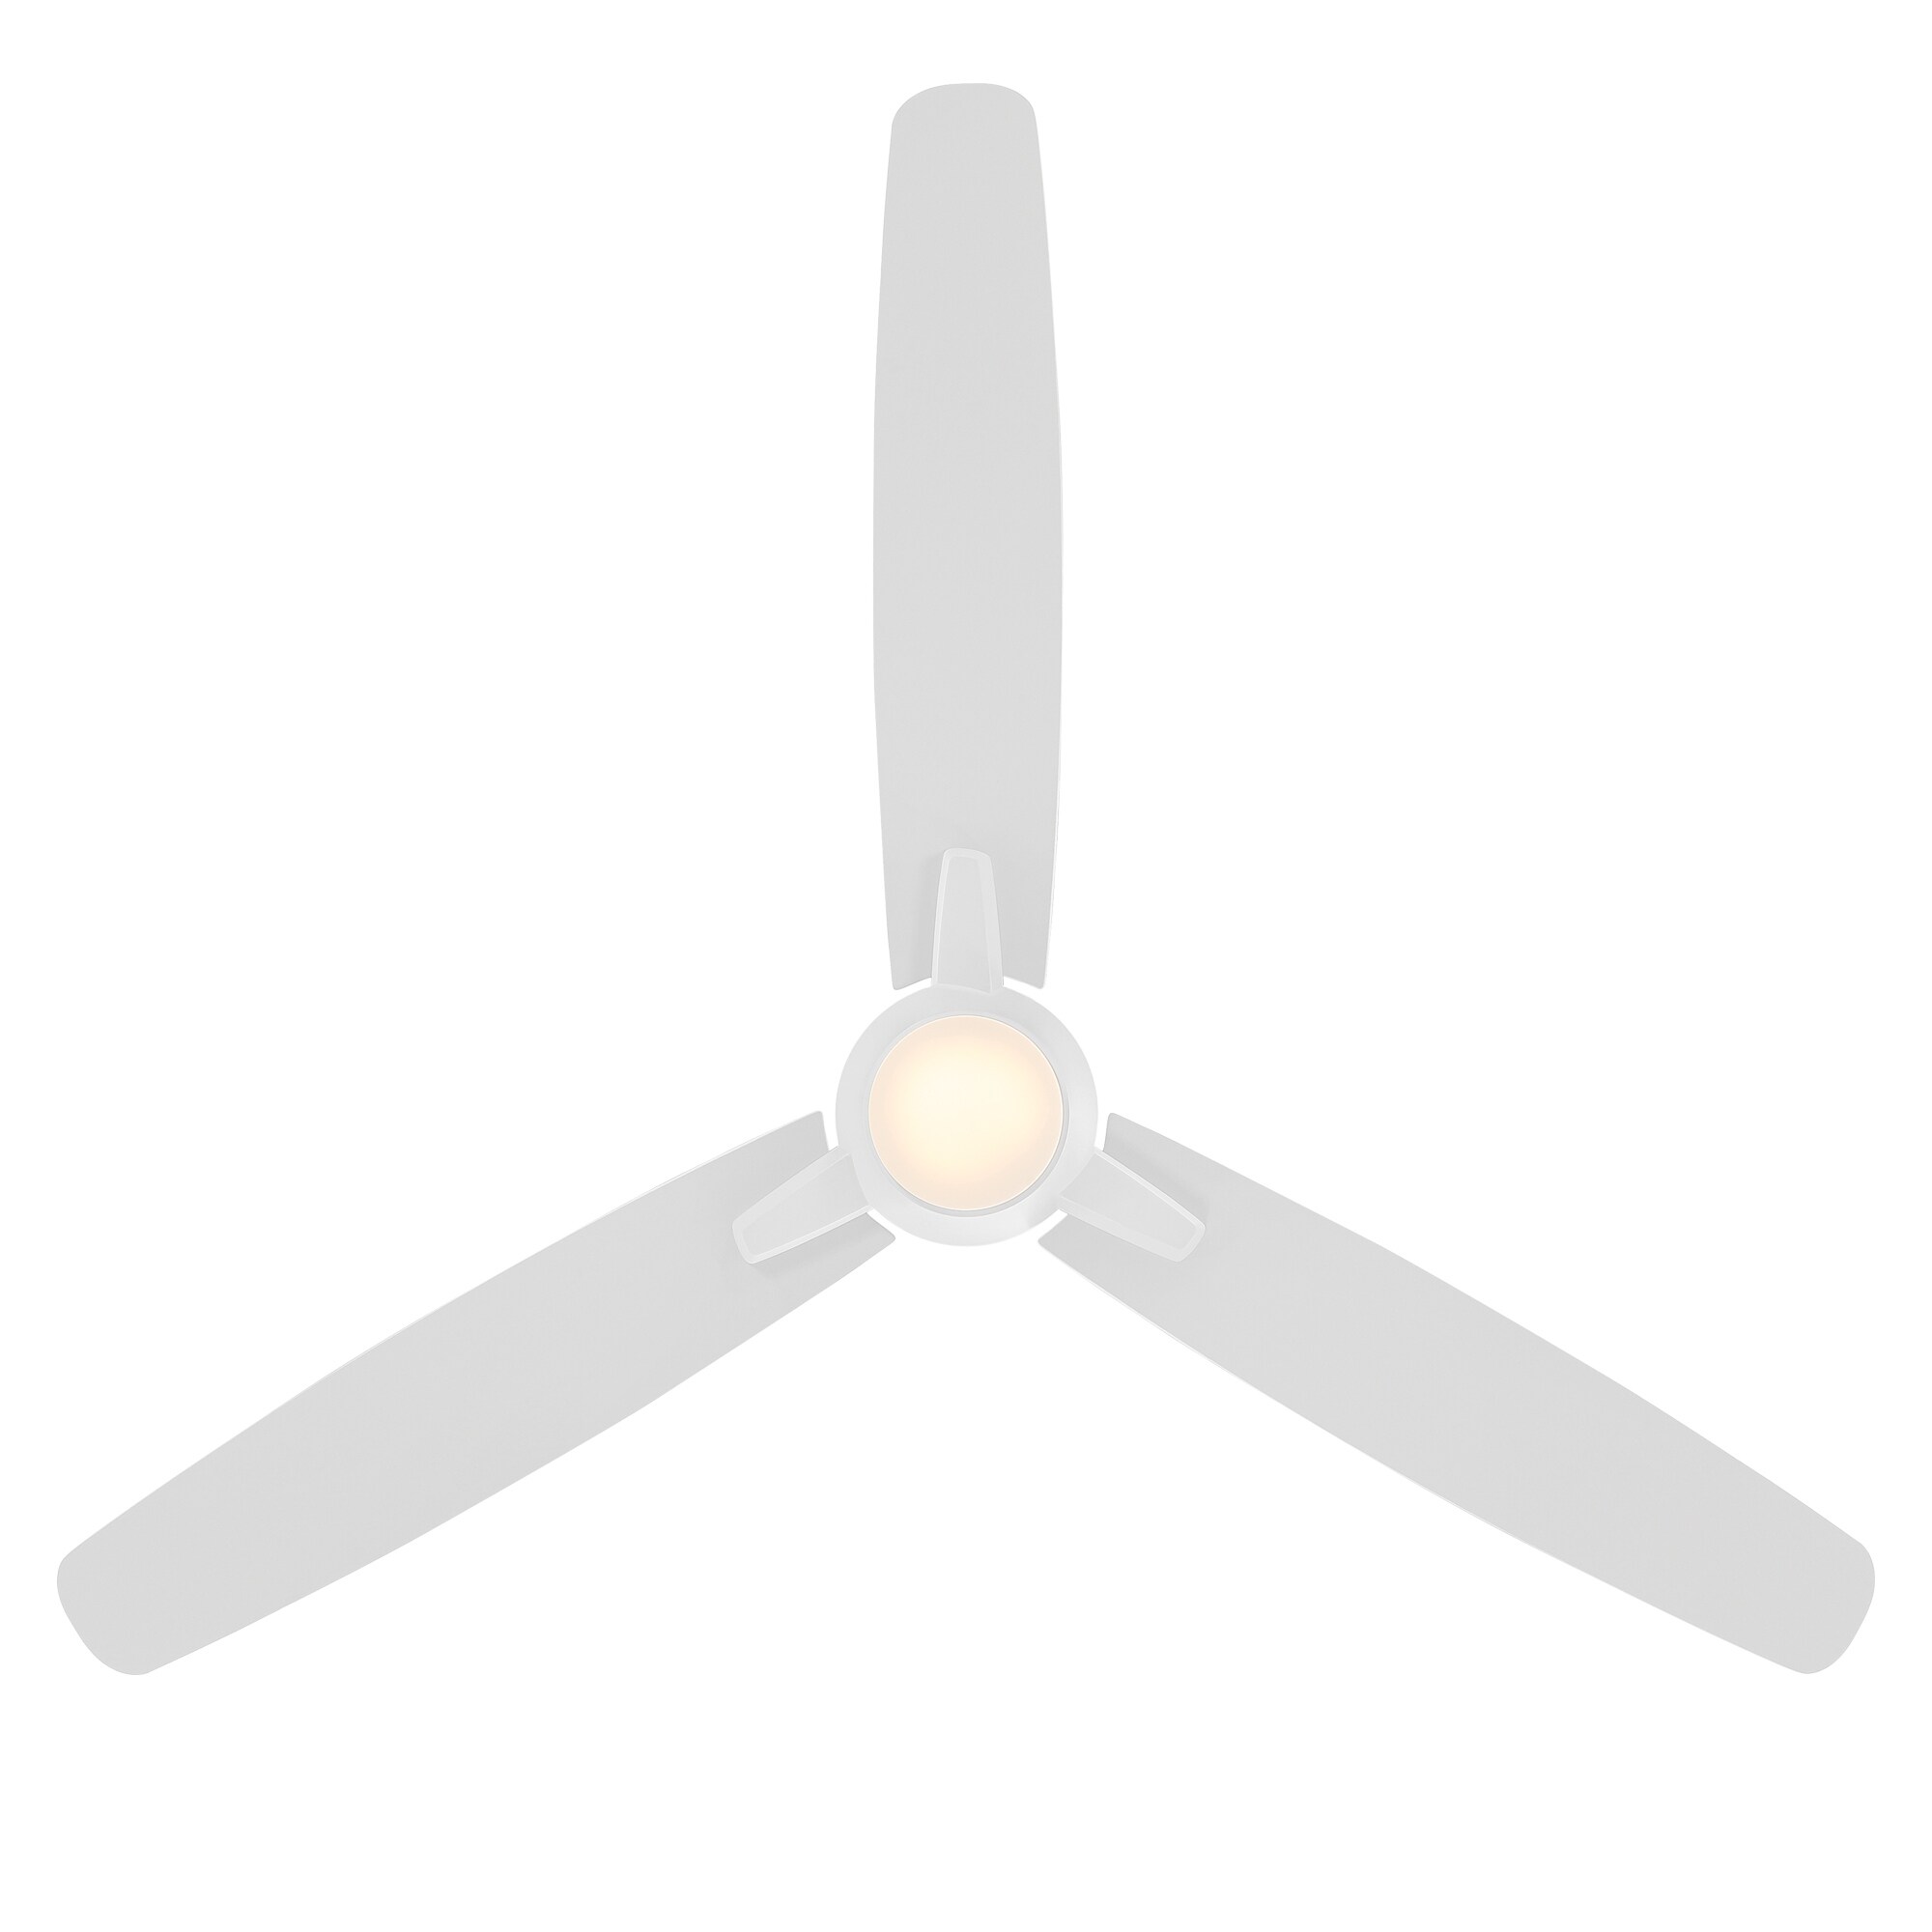 Blitzen Indoor/Outdoor 3-Blade Smart Ceiling Fan 54in with eBay